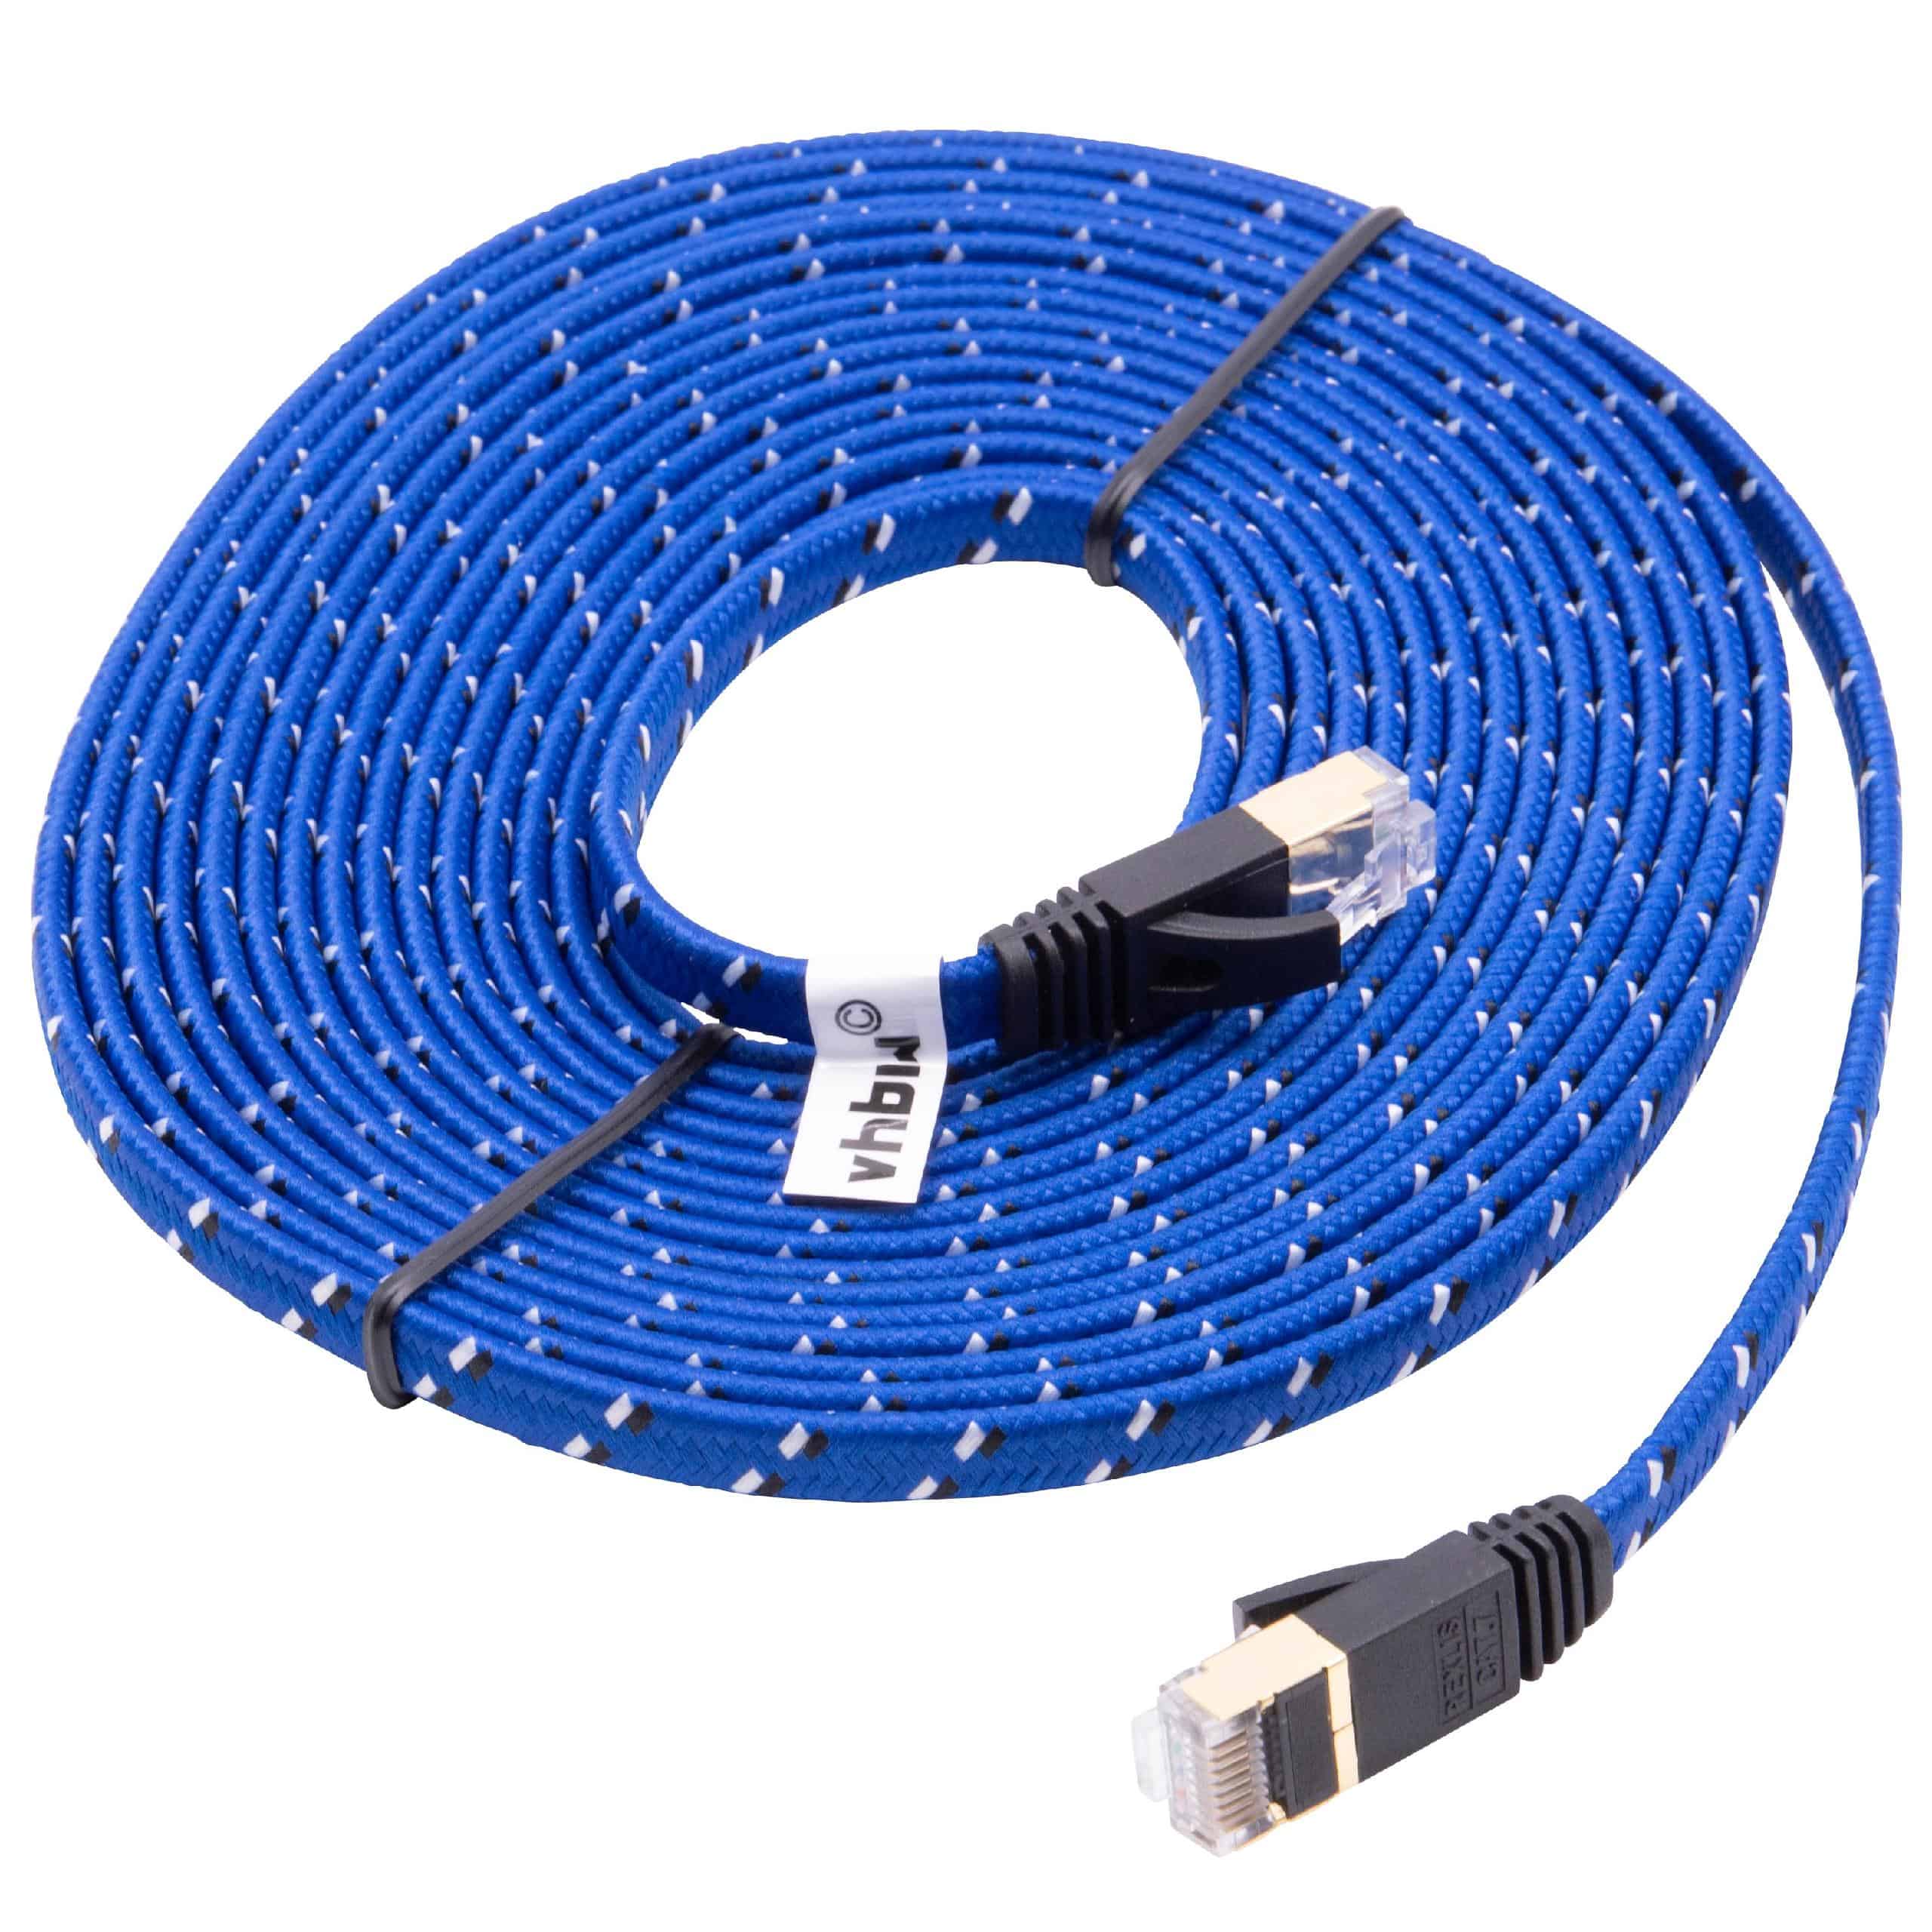 Cable de red de Ethernet, LAN, cable patch Cat7 5m azul cable plano de tendido